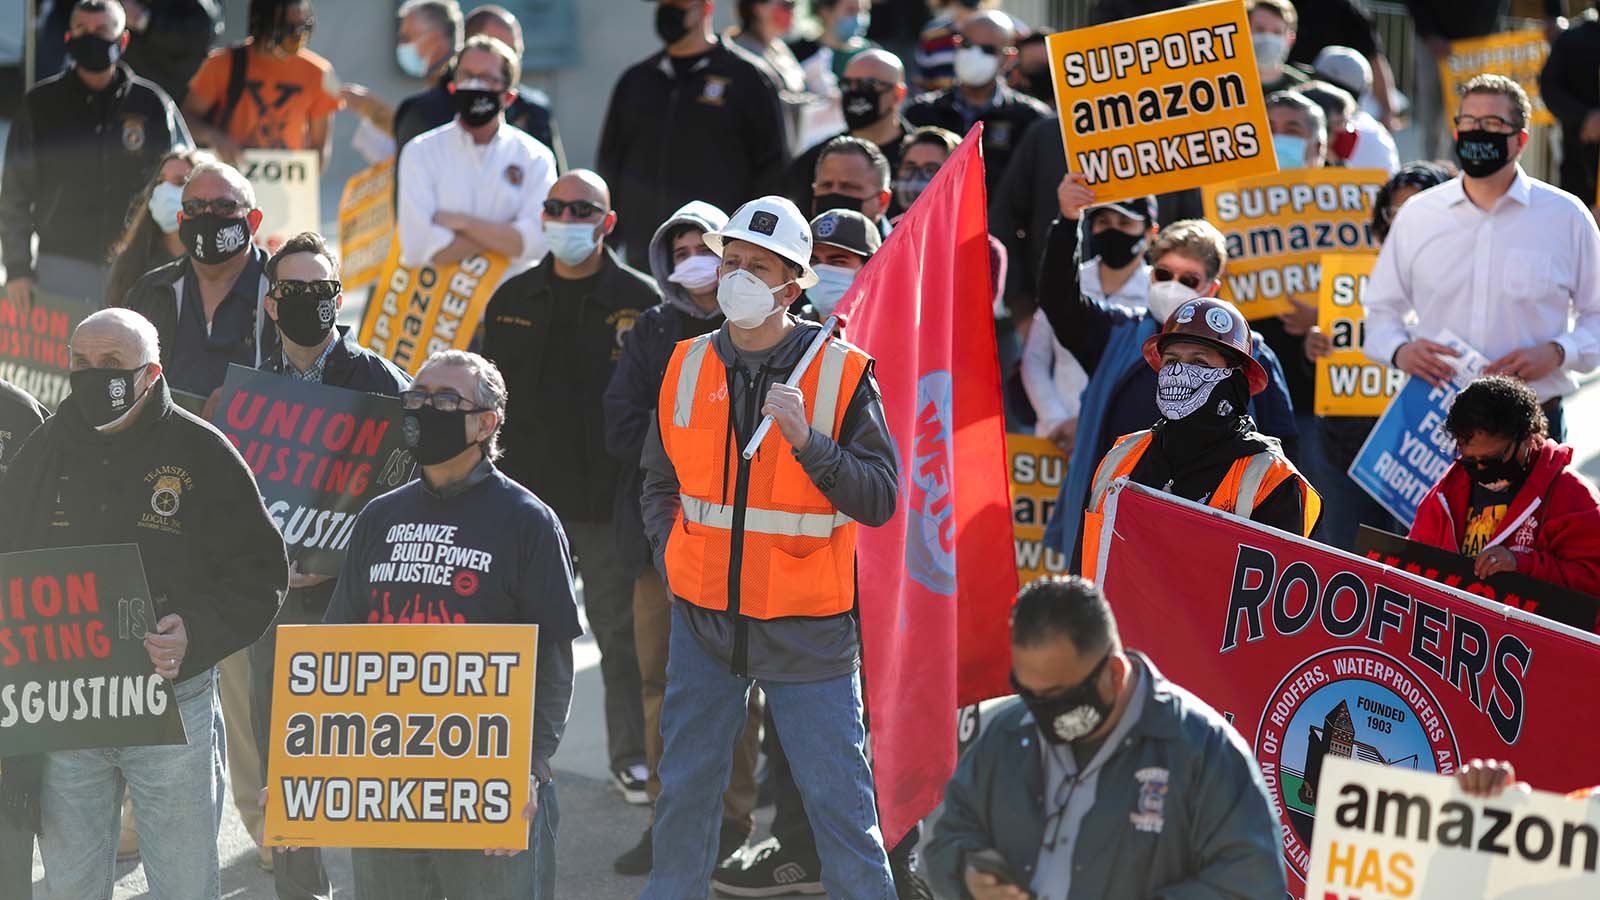 הפגנת תמיכה בהתאגדות עובדי מחסן אמזון באלבמה. אמזון בניסיונות נואשים לגייס כוח אדם נוסף למחסניה באלבמה וביו-יורק (צילום: REUTERS/Lucy Nicholson)